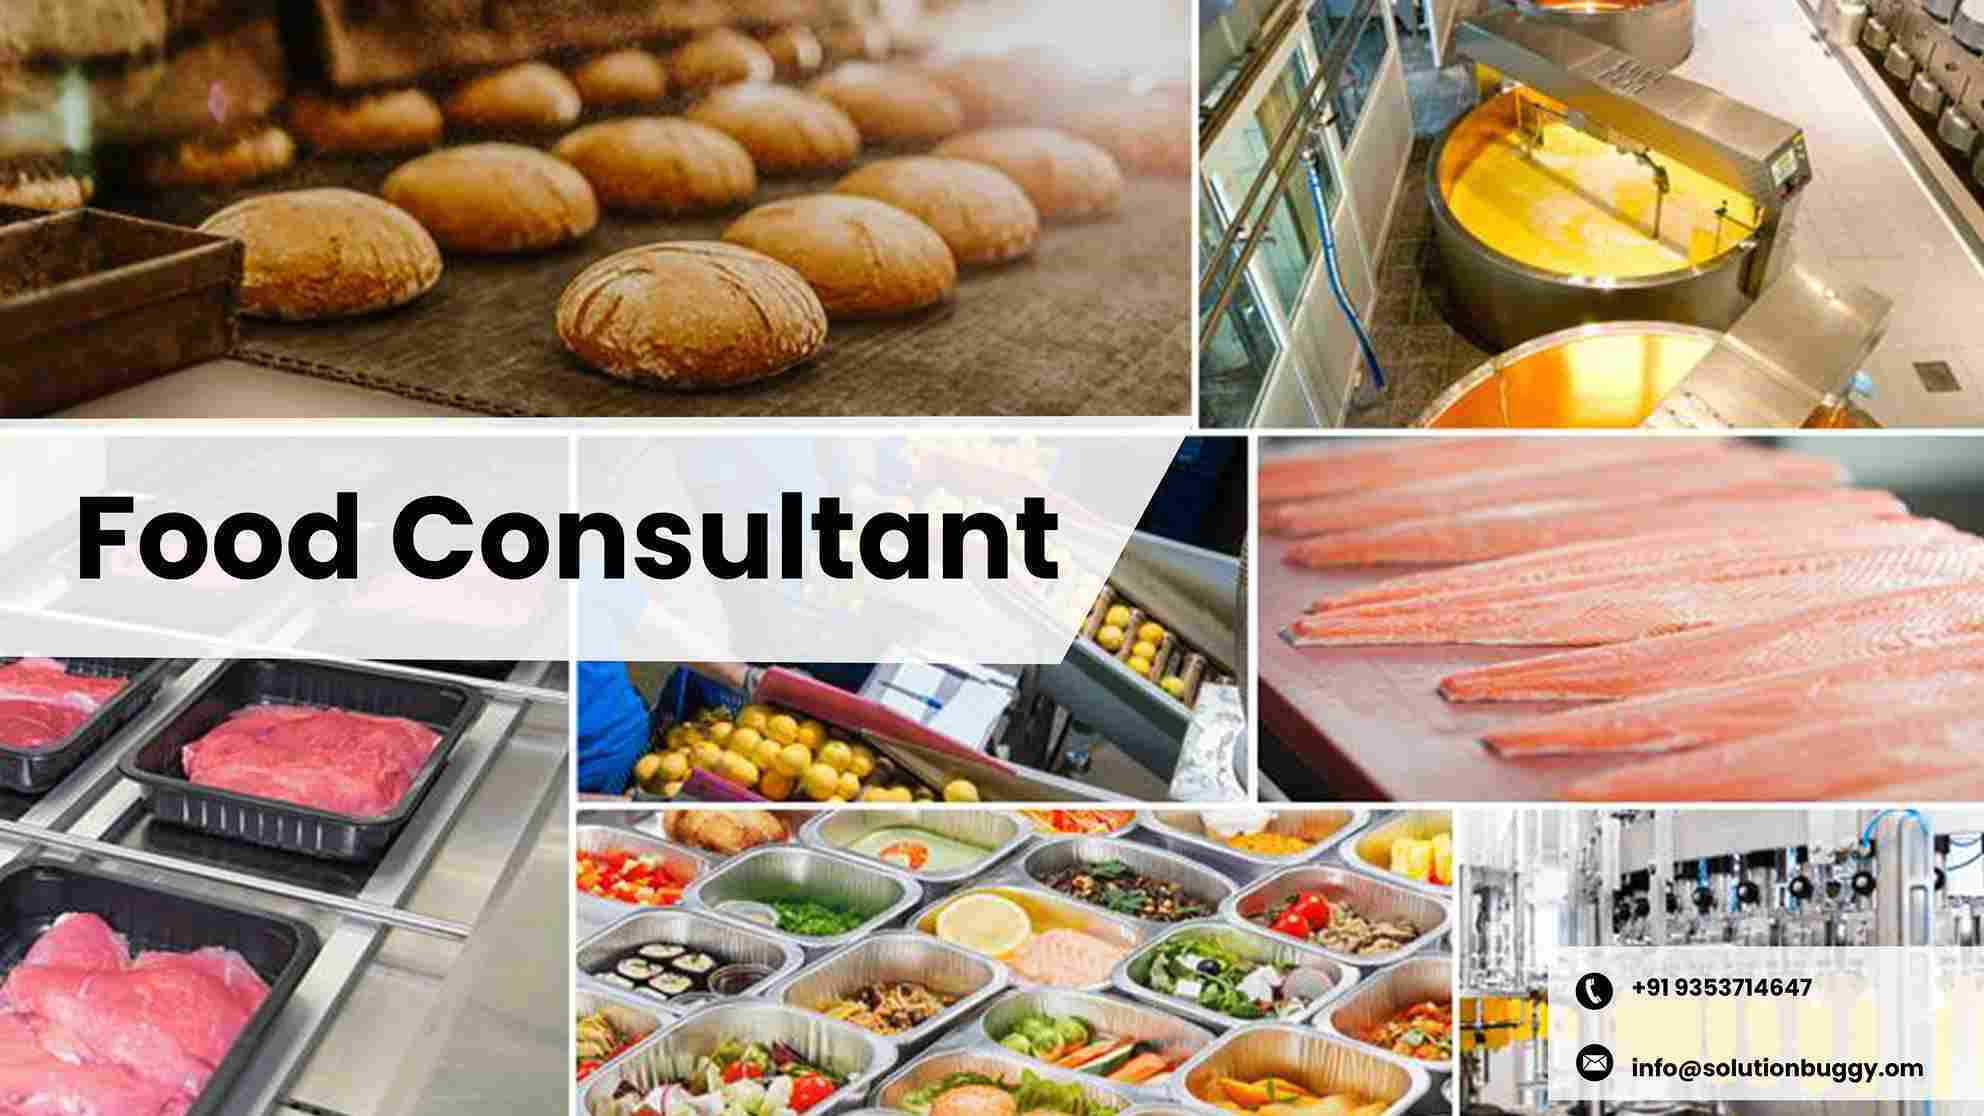 Food Consultant's